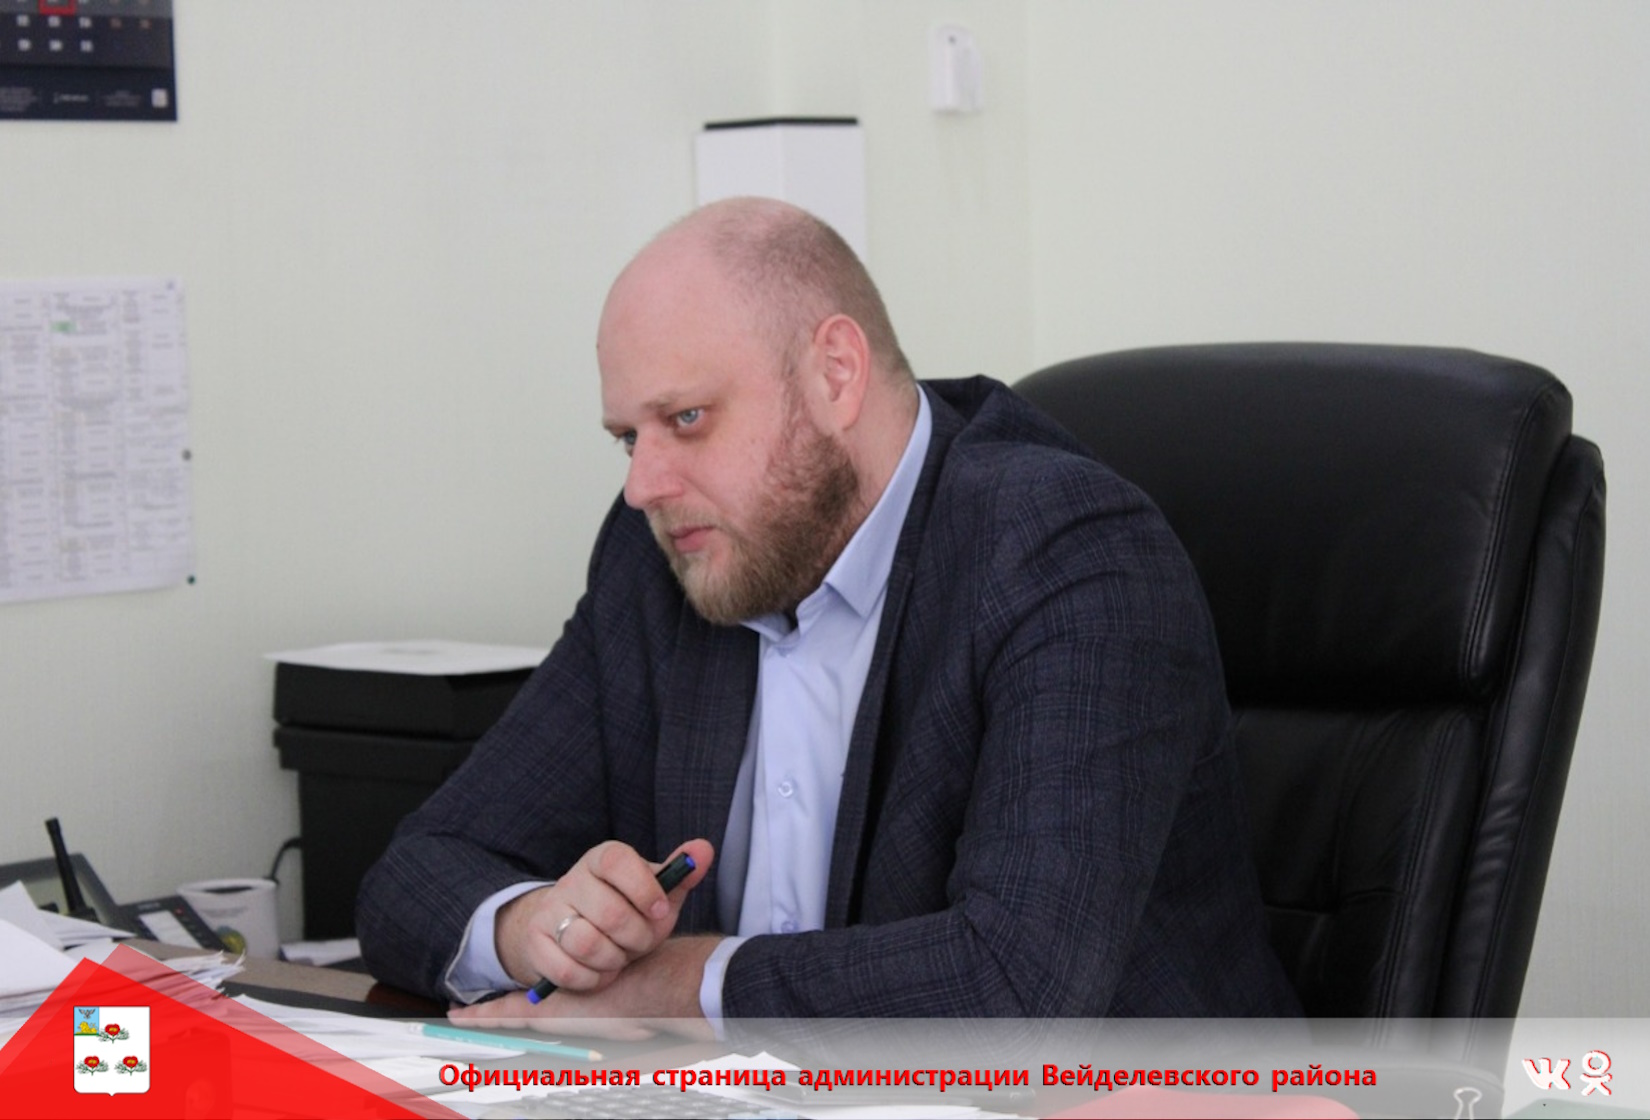 Министр сельского хозяйства и продовольствия Белгородской области Андрей Александрович Антоненко проведёт личный приём граждан.